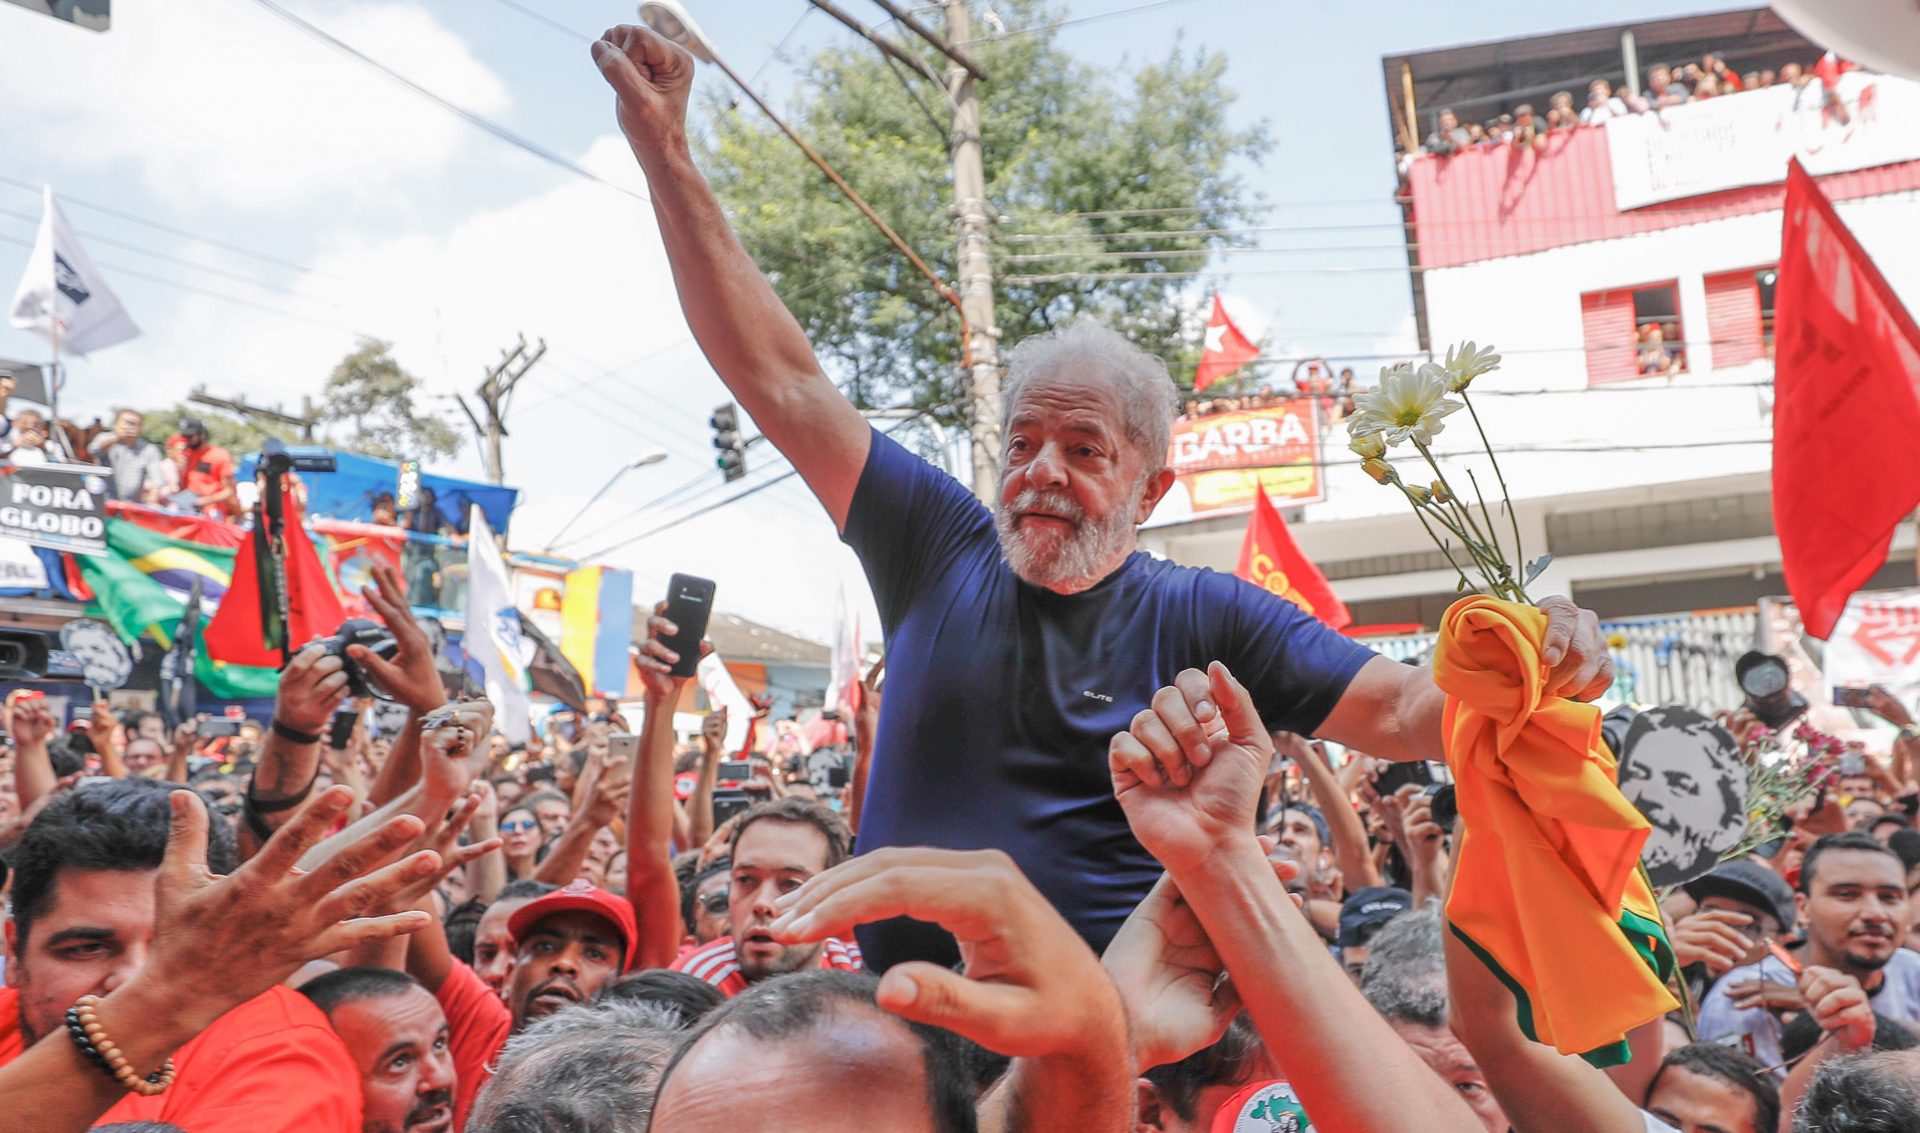 Lula presenta recurso para anular ampliación de condena